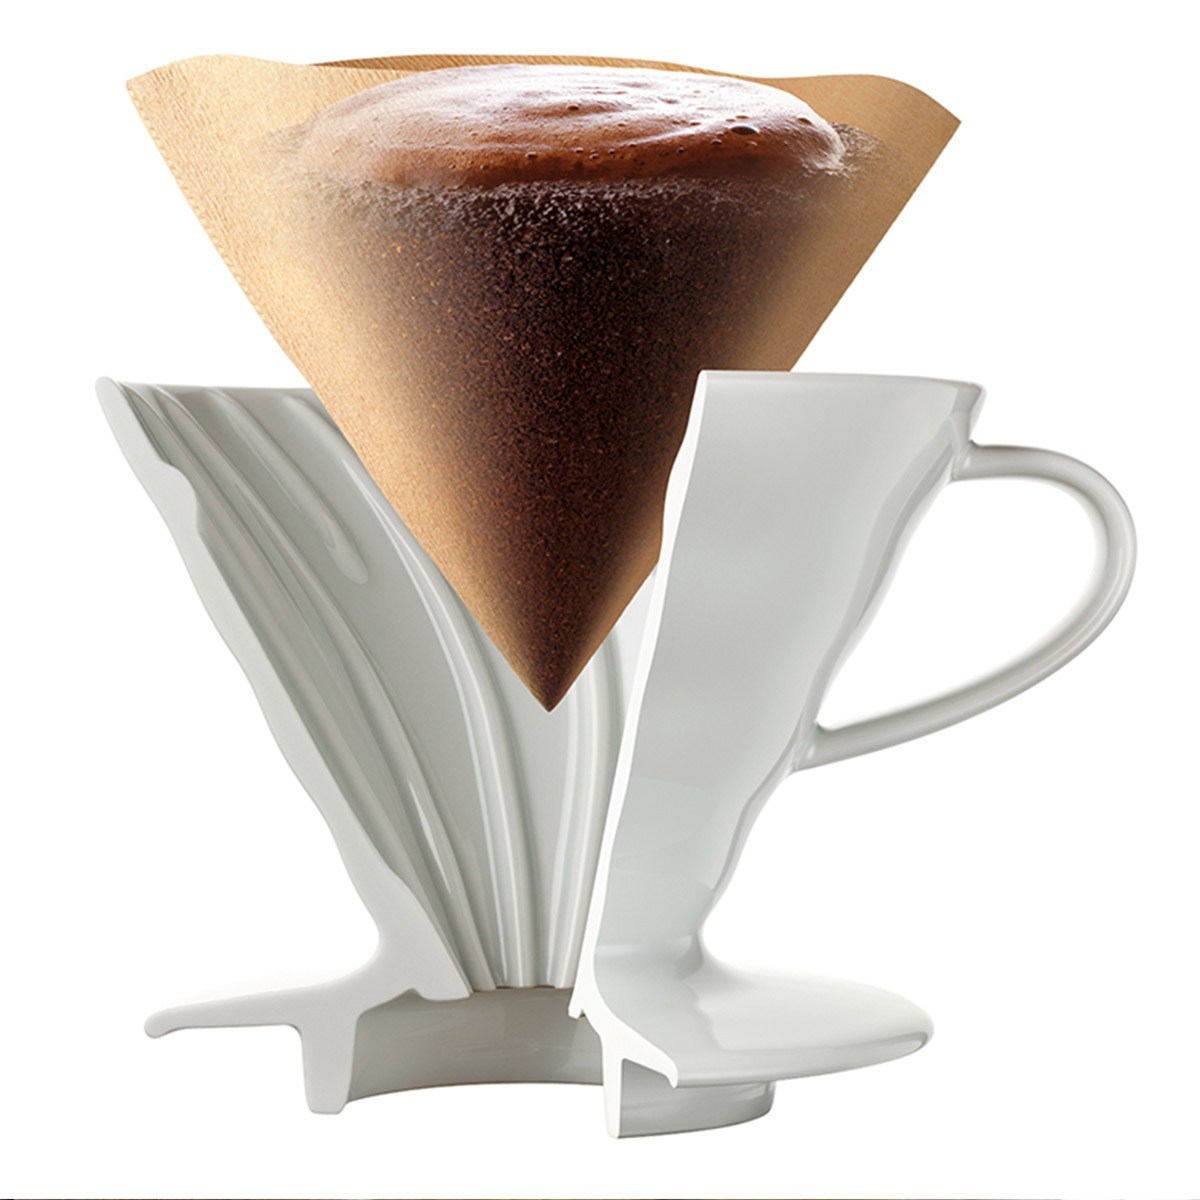 Hario 錐形無漂白咖啡濾紙 1 - 4杯 100張 X 10入